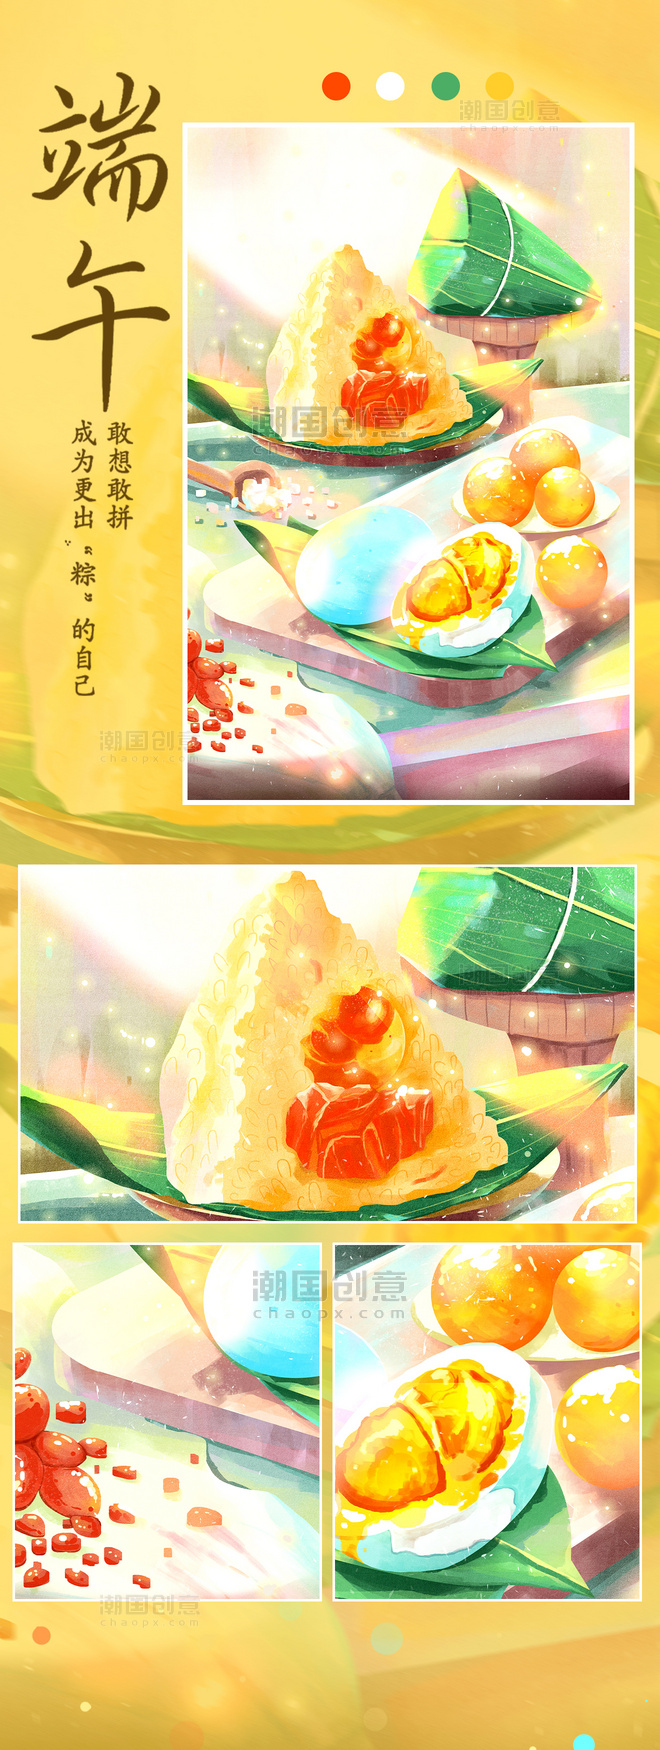 端午节粽子食物光感插画配图